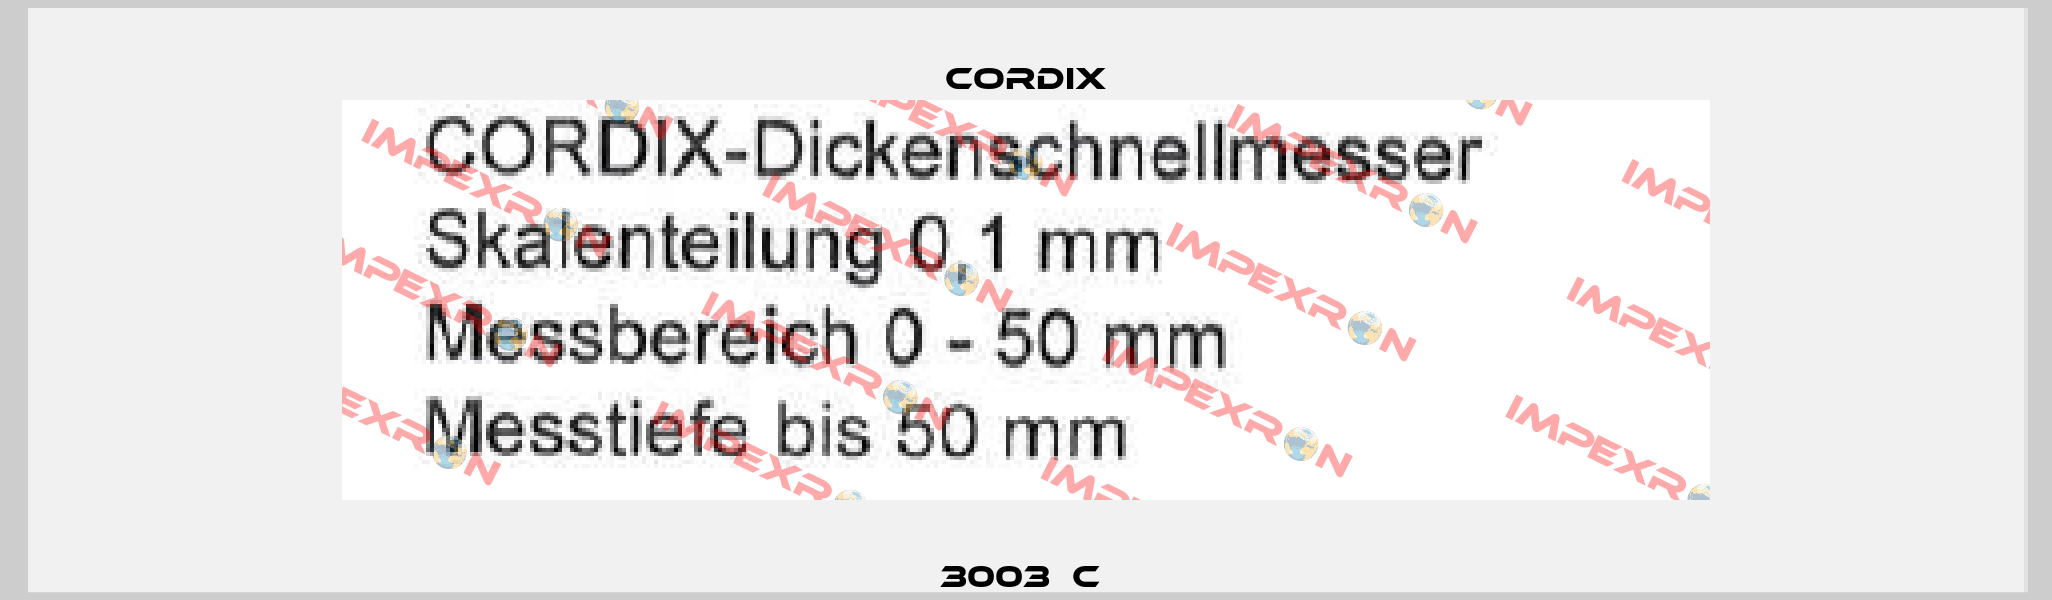  3003  C   CORDIX